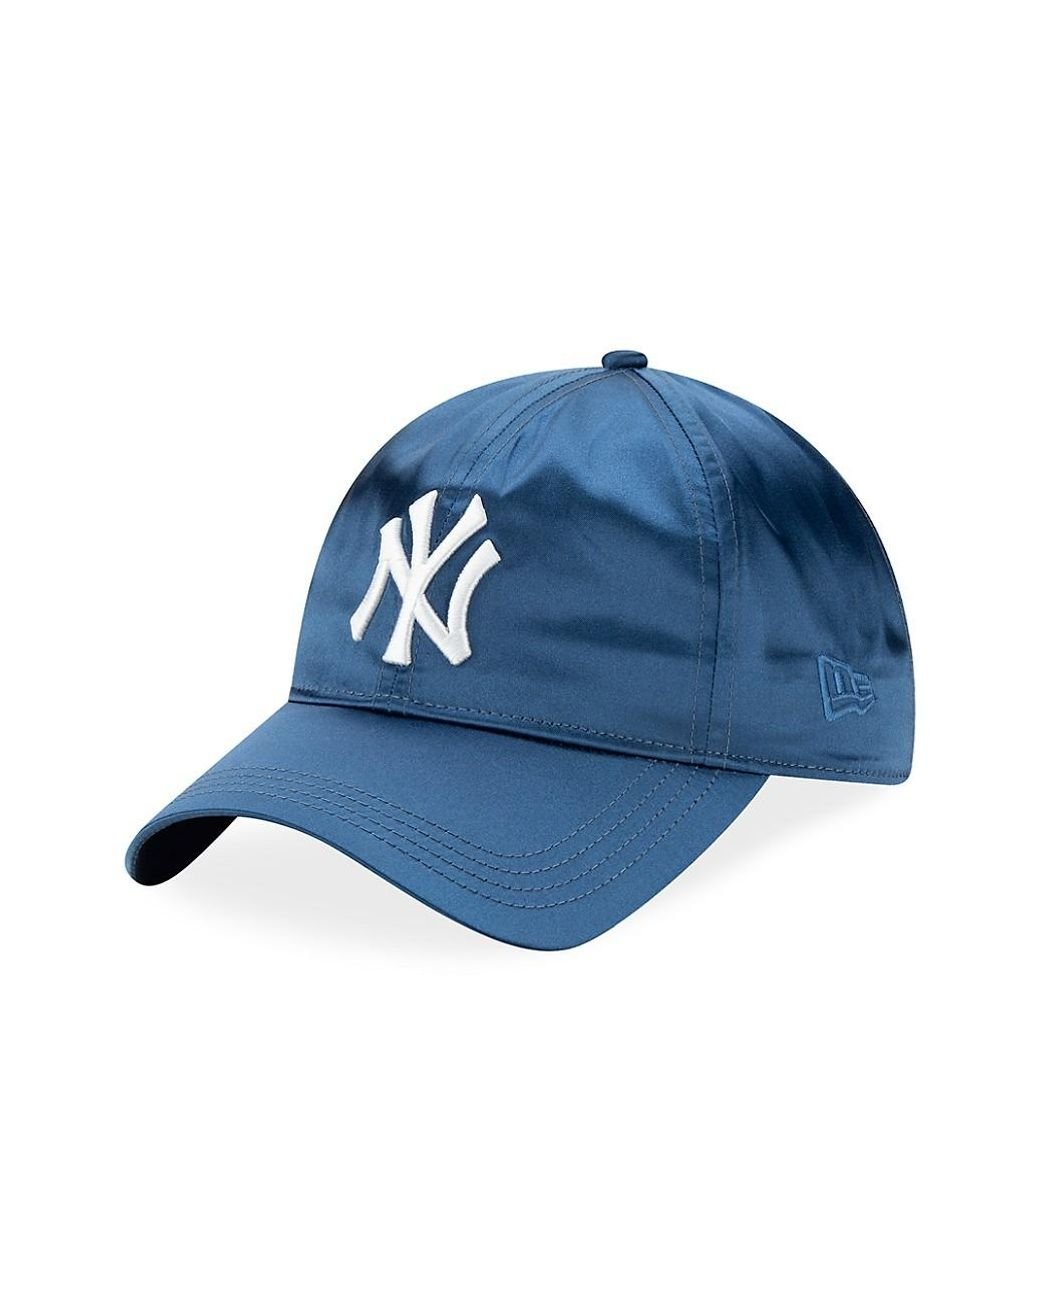 New Era Caps New Era 9forty La Dodgers Baseball Cap Pink, $14